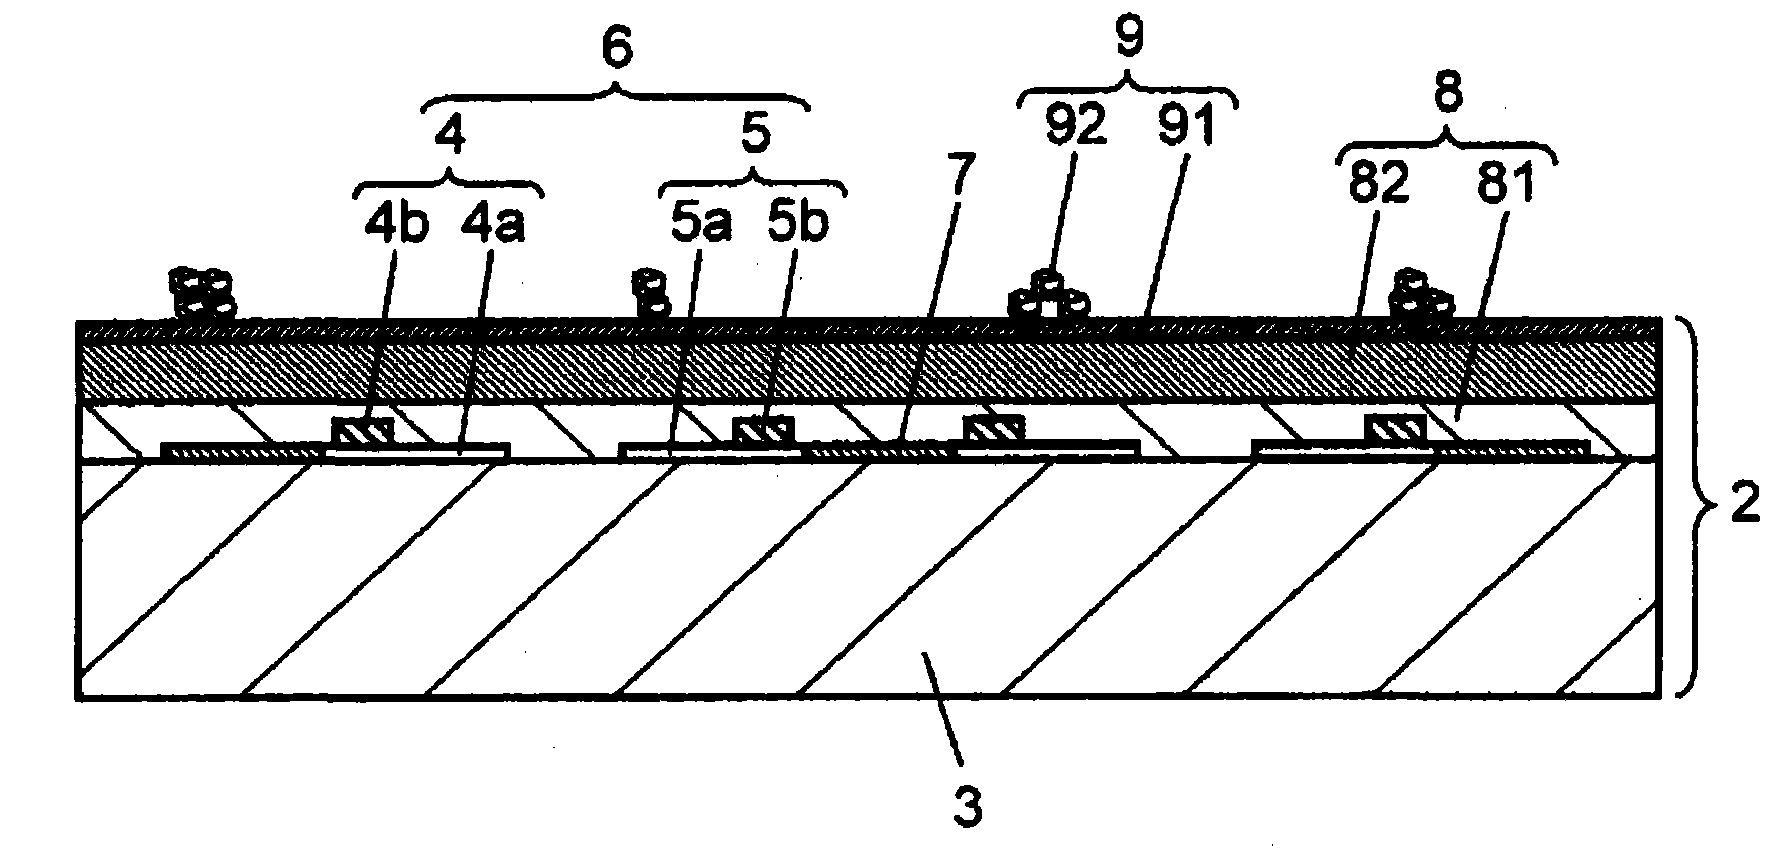 Method for producing plasma display panel